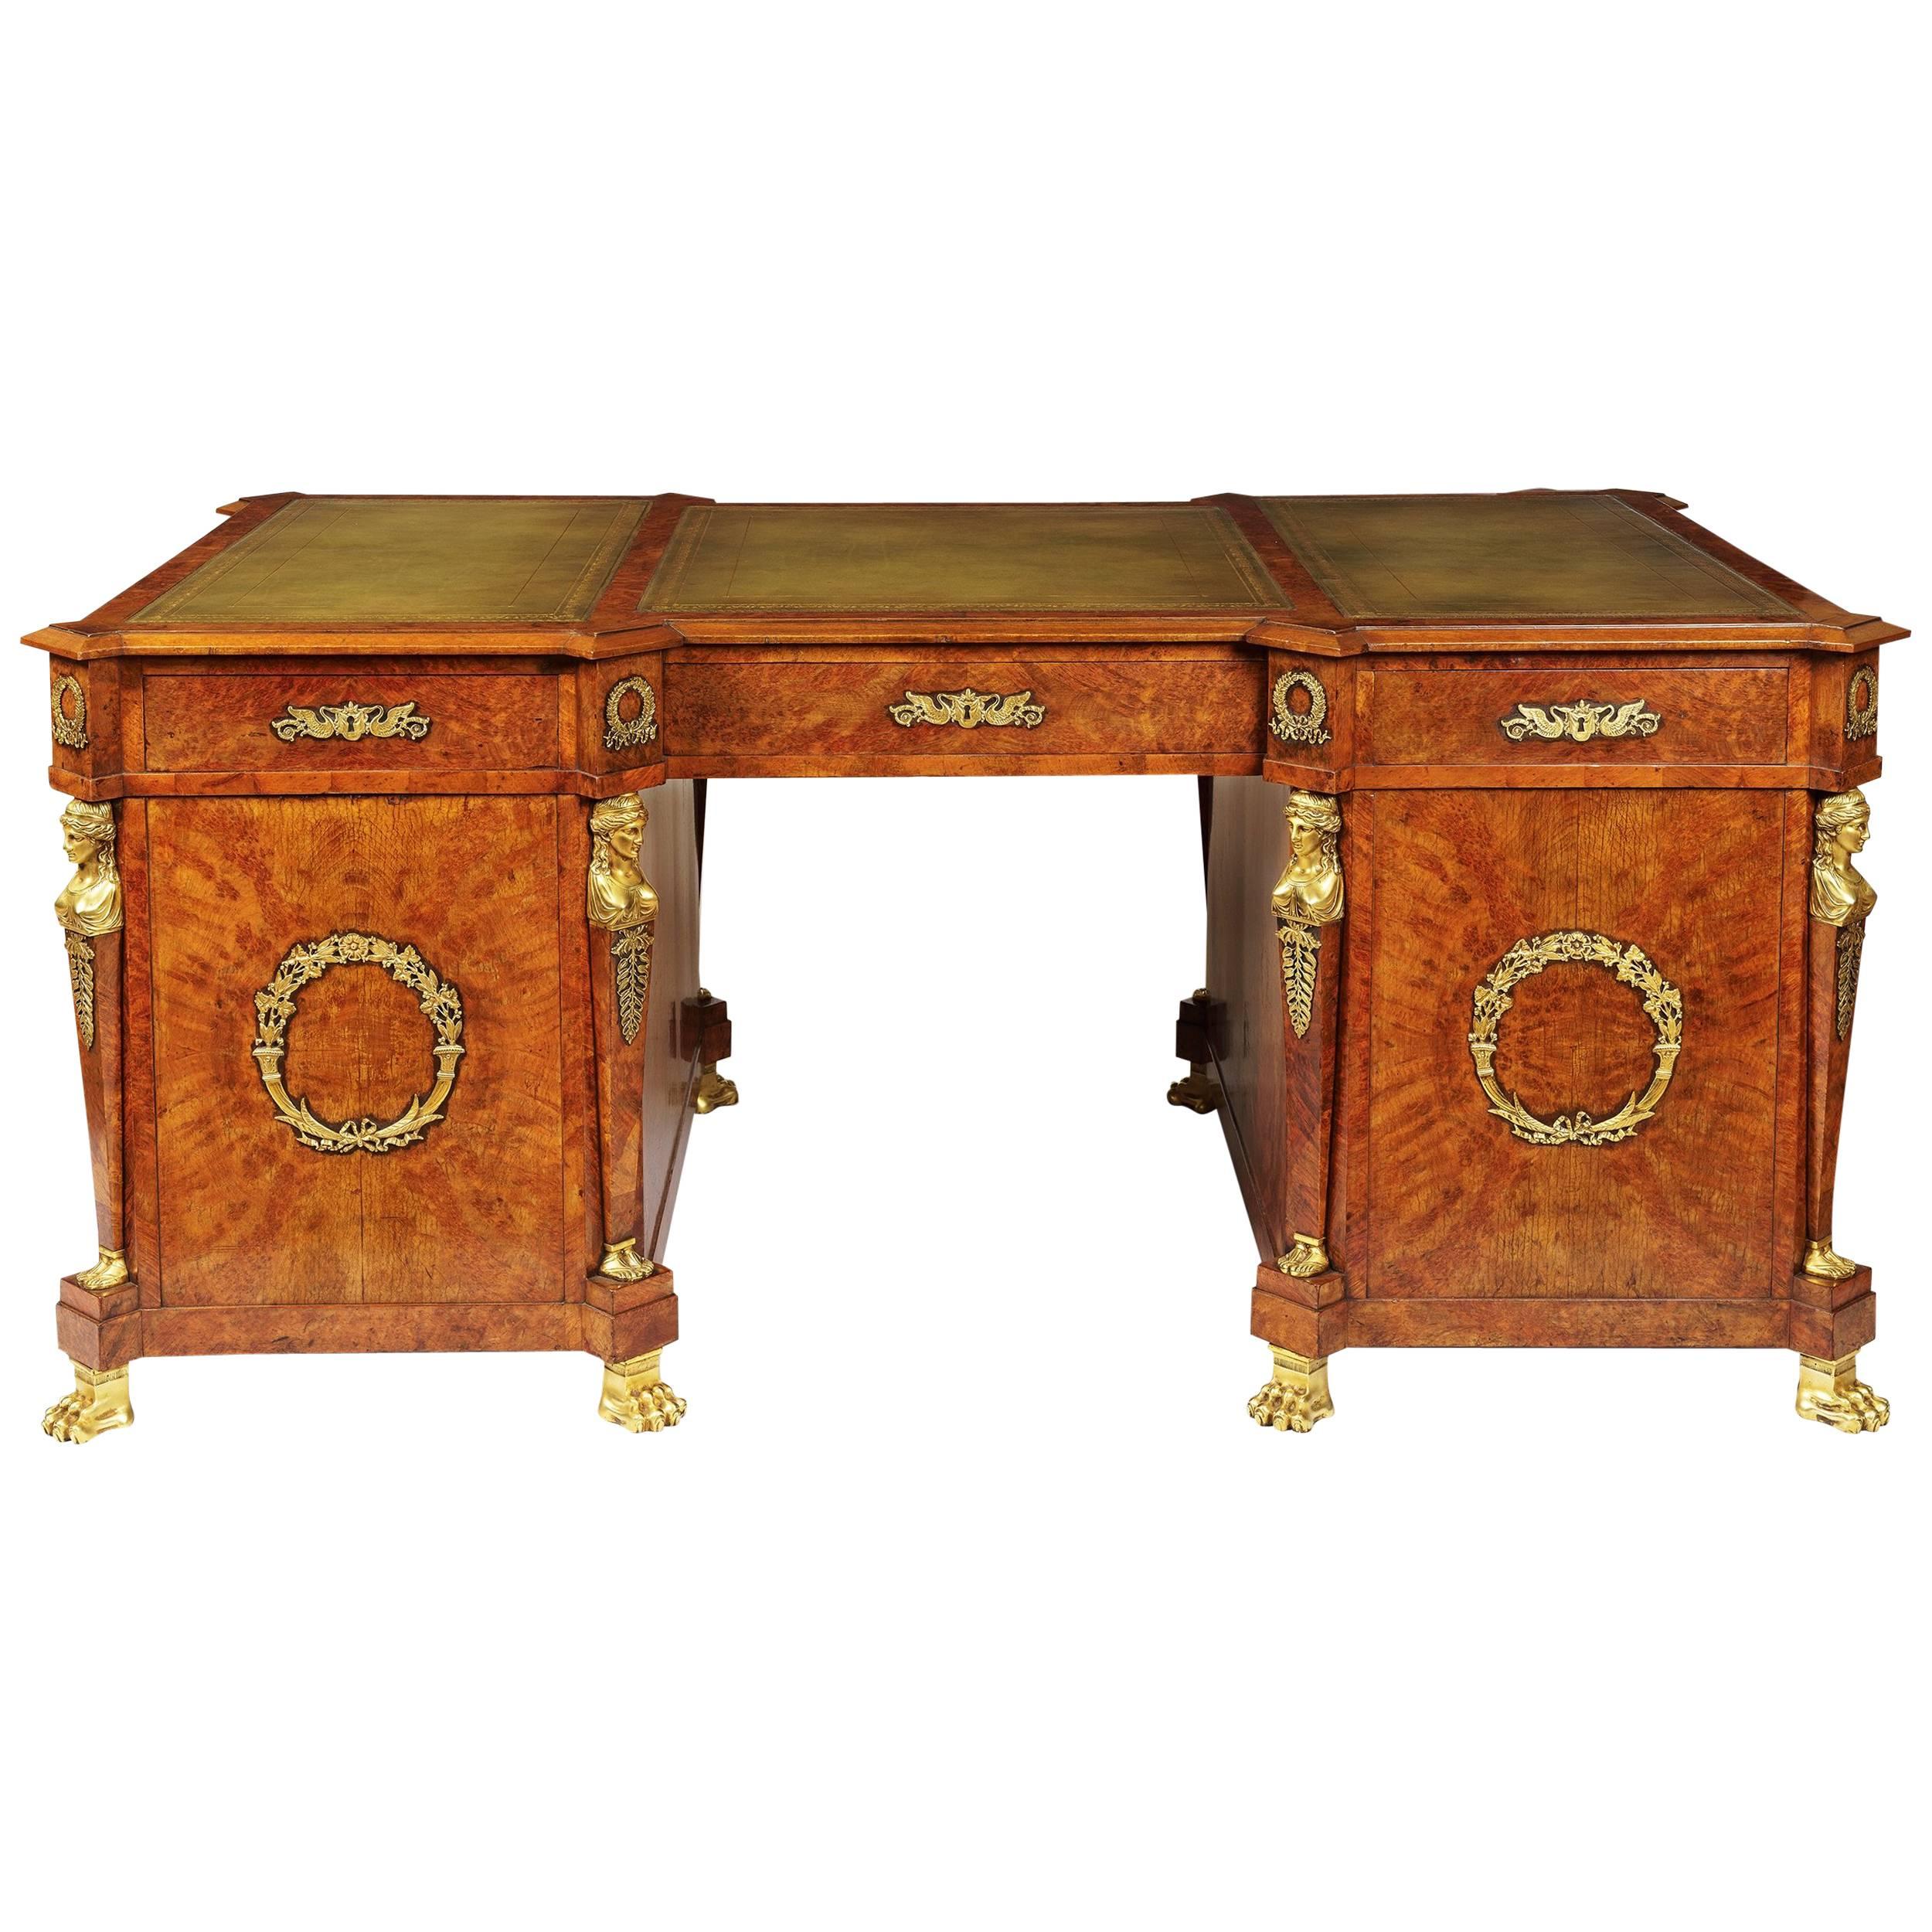 Schreibtisch aus Birke und marokkanischem Leder des 19. Jahrhunderts im französischen Empire-Stil